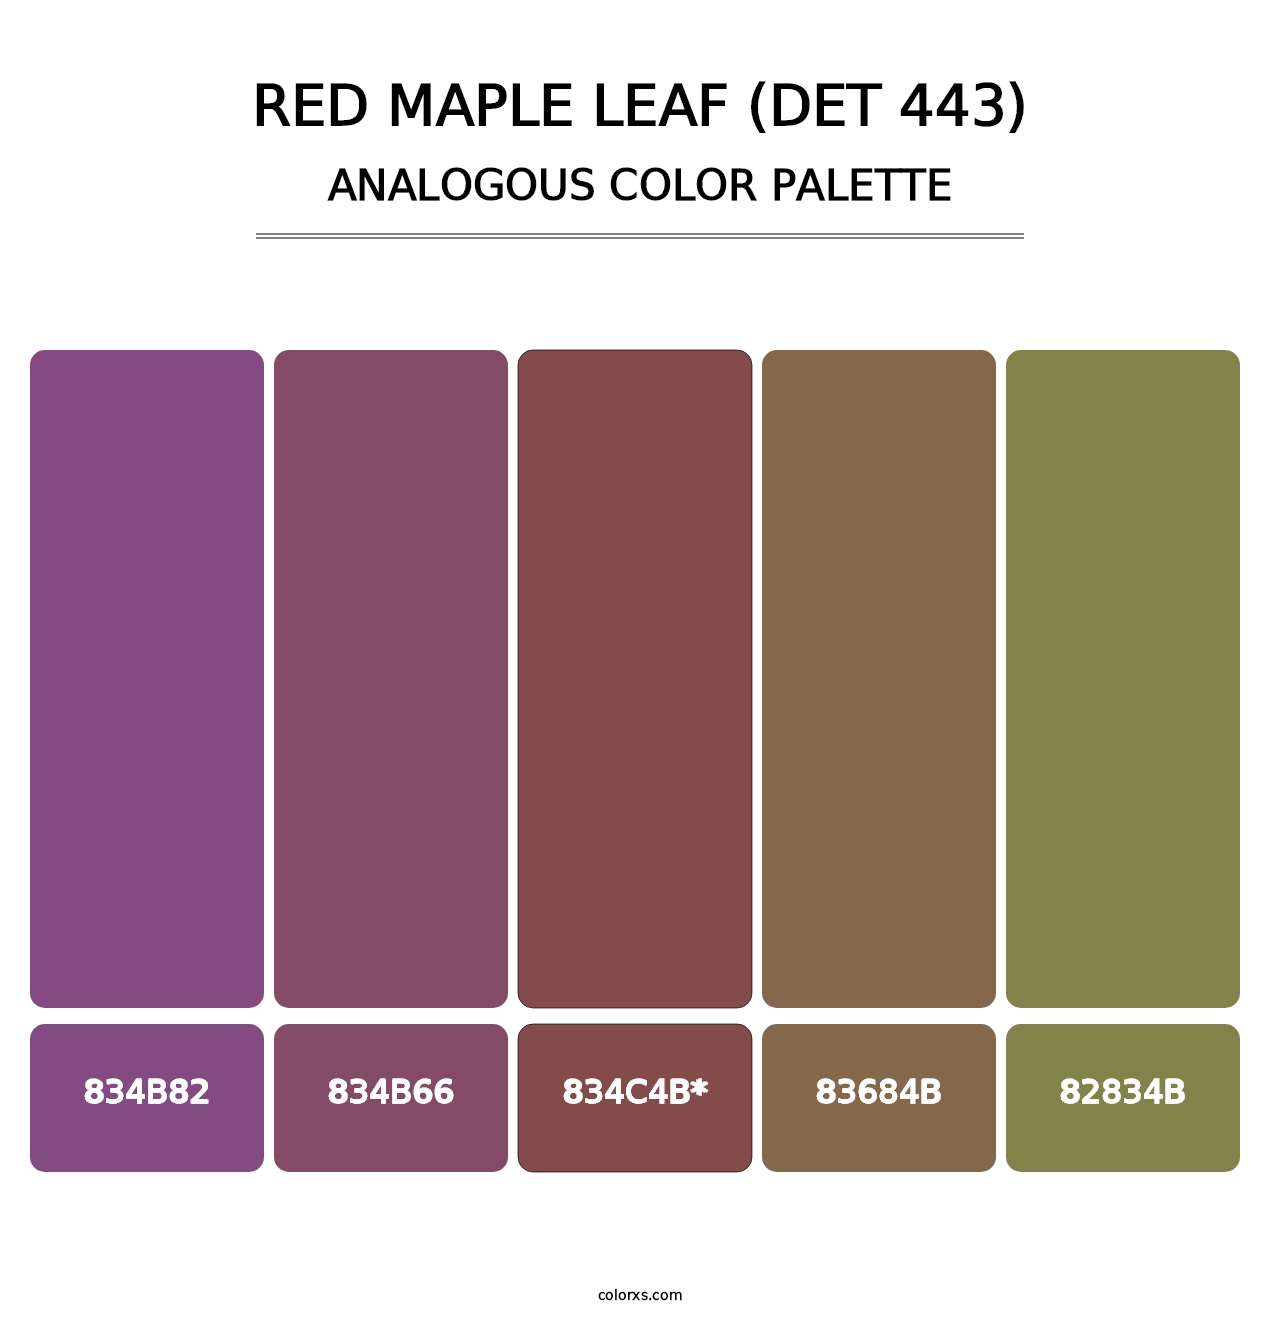 Red Maple Leaf (DET 443) - Analogous Color Palette